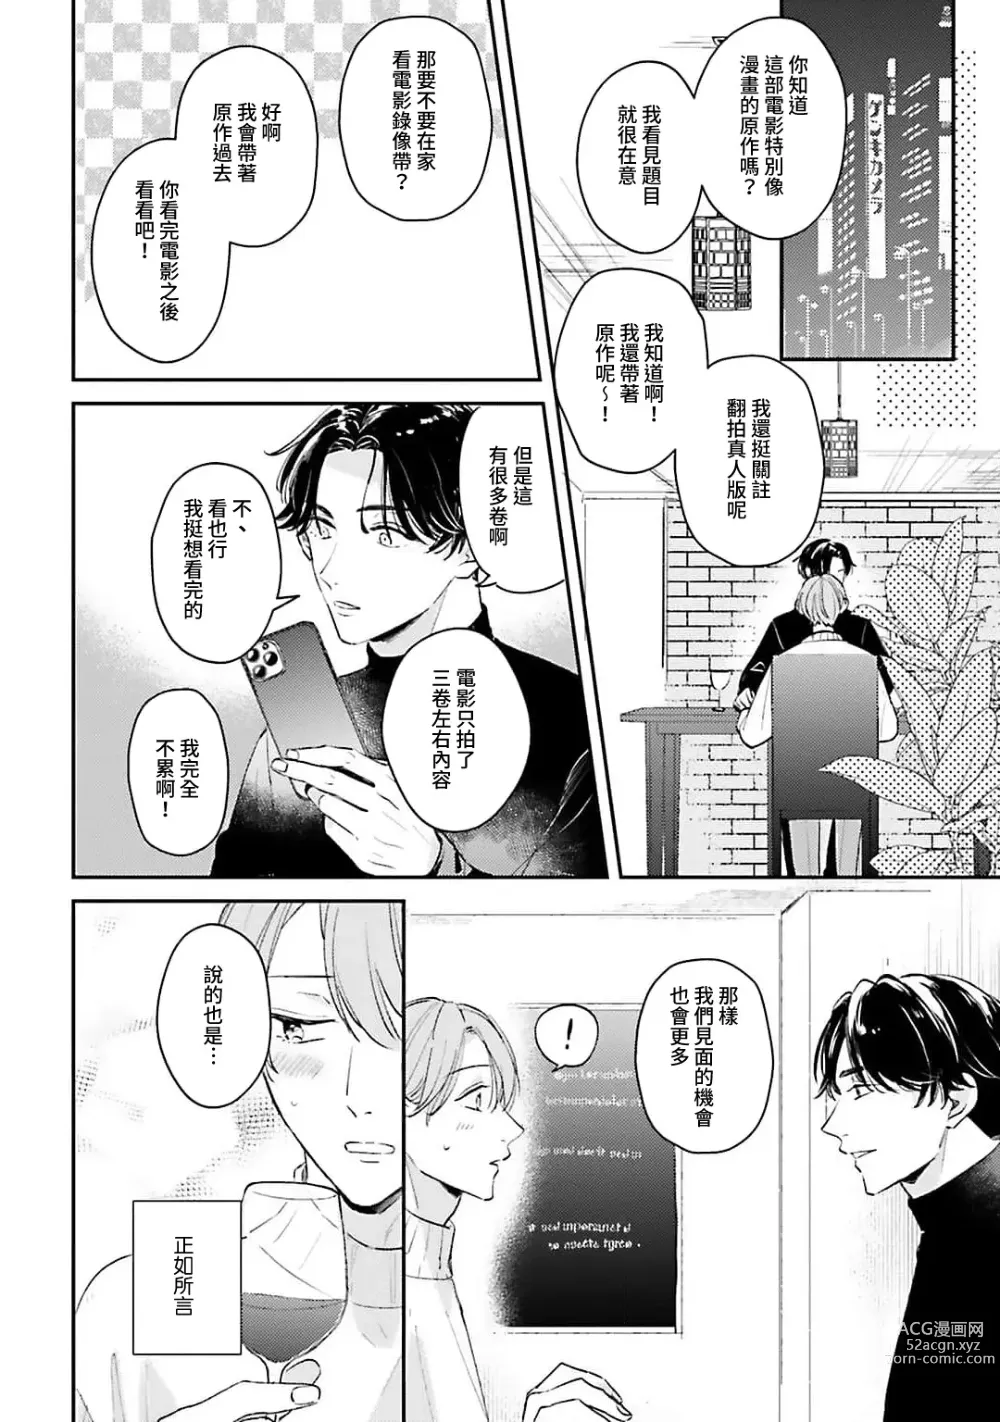 Page 103 of manga 绽放的恋爱皆为醉与甜1